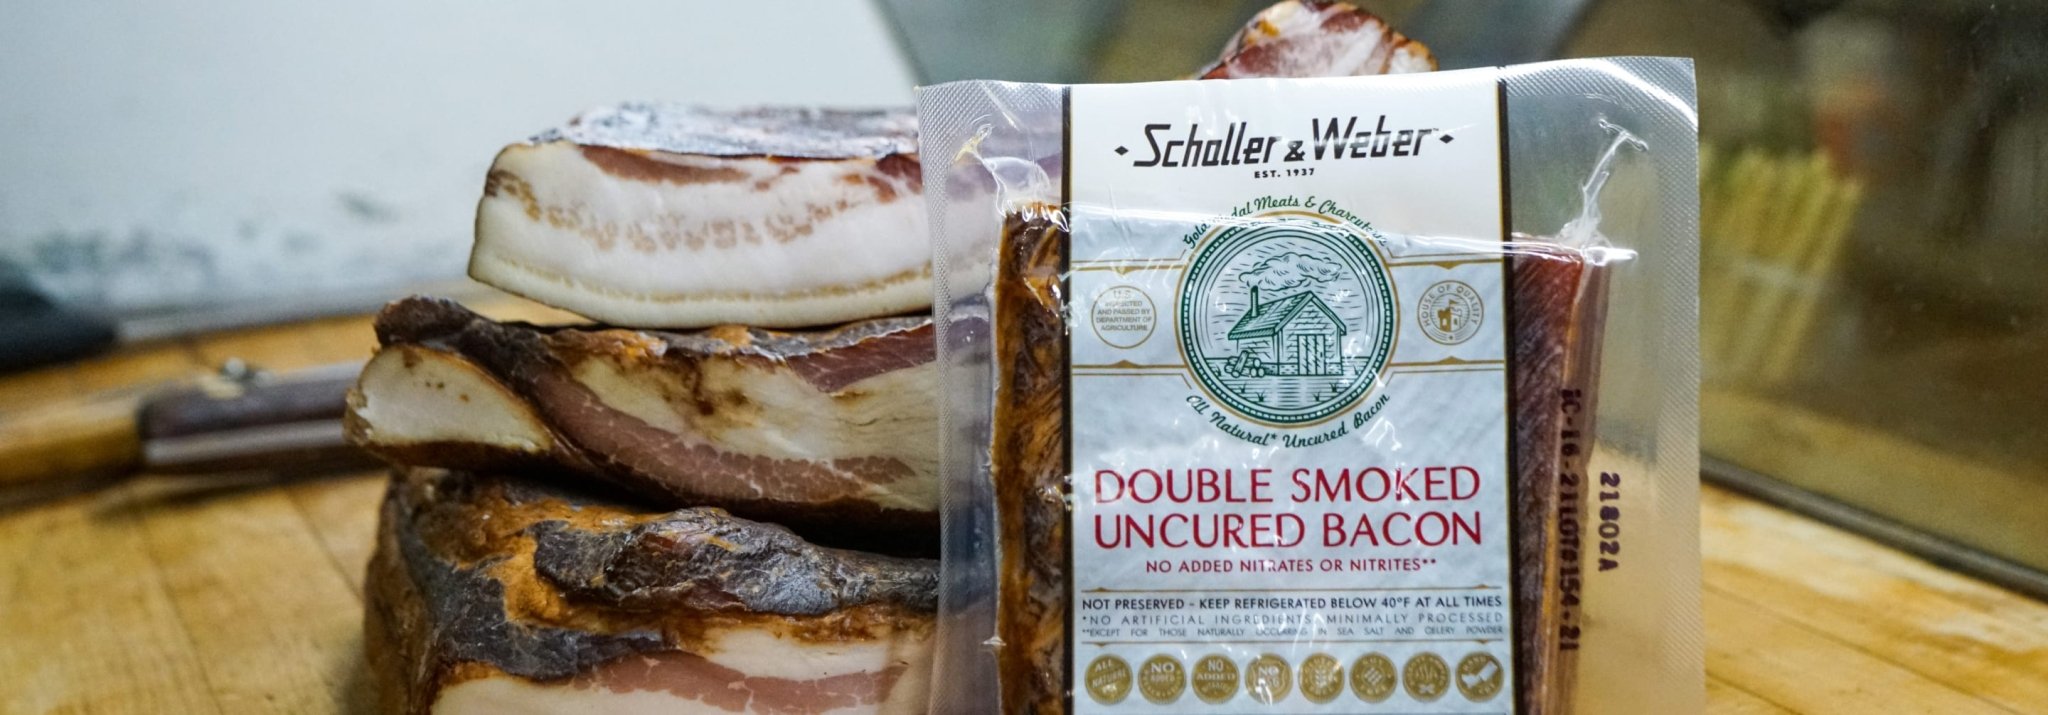 Bacon - Schaller & Weber